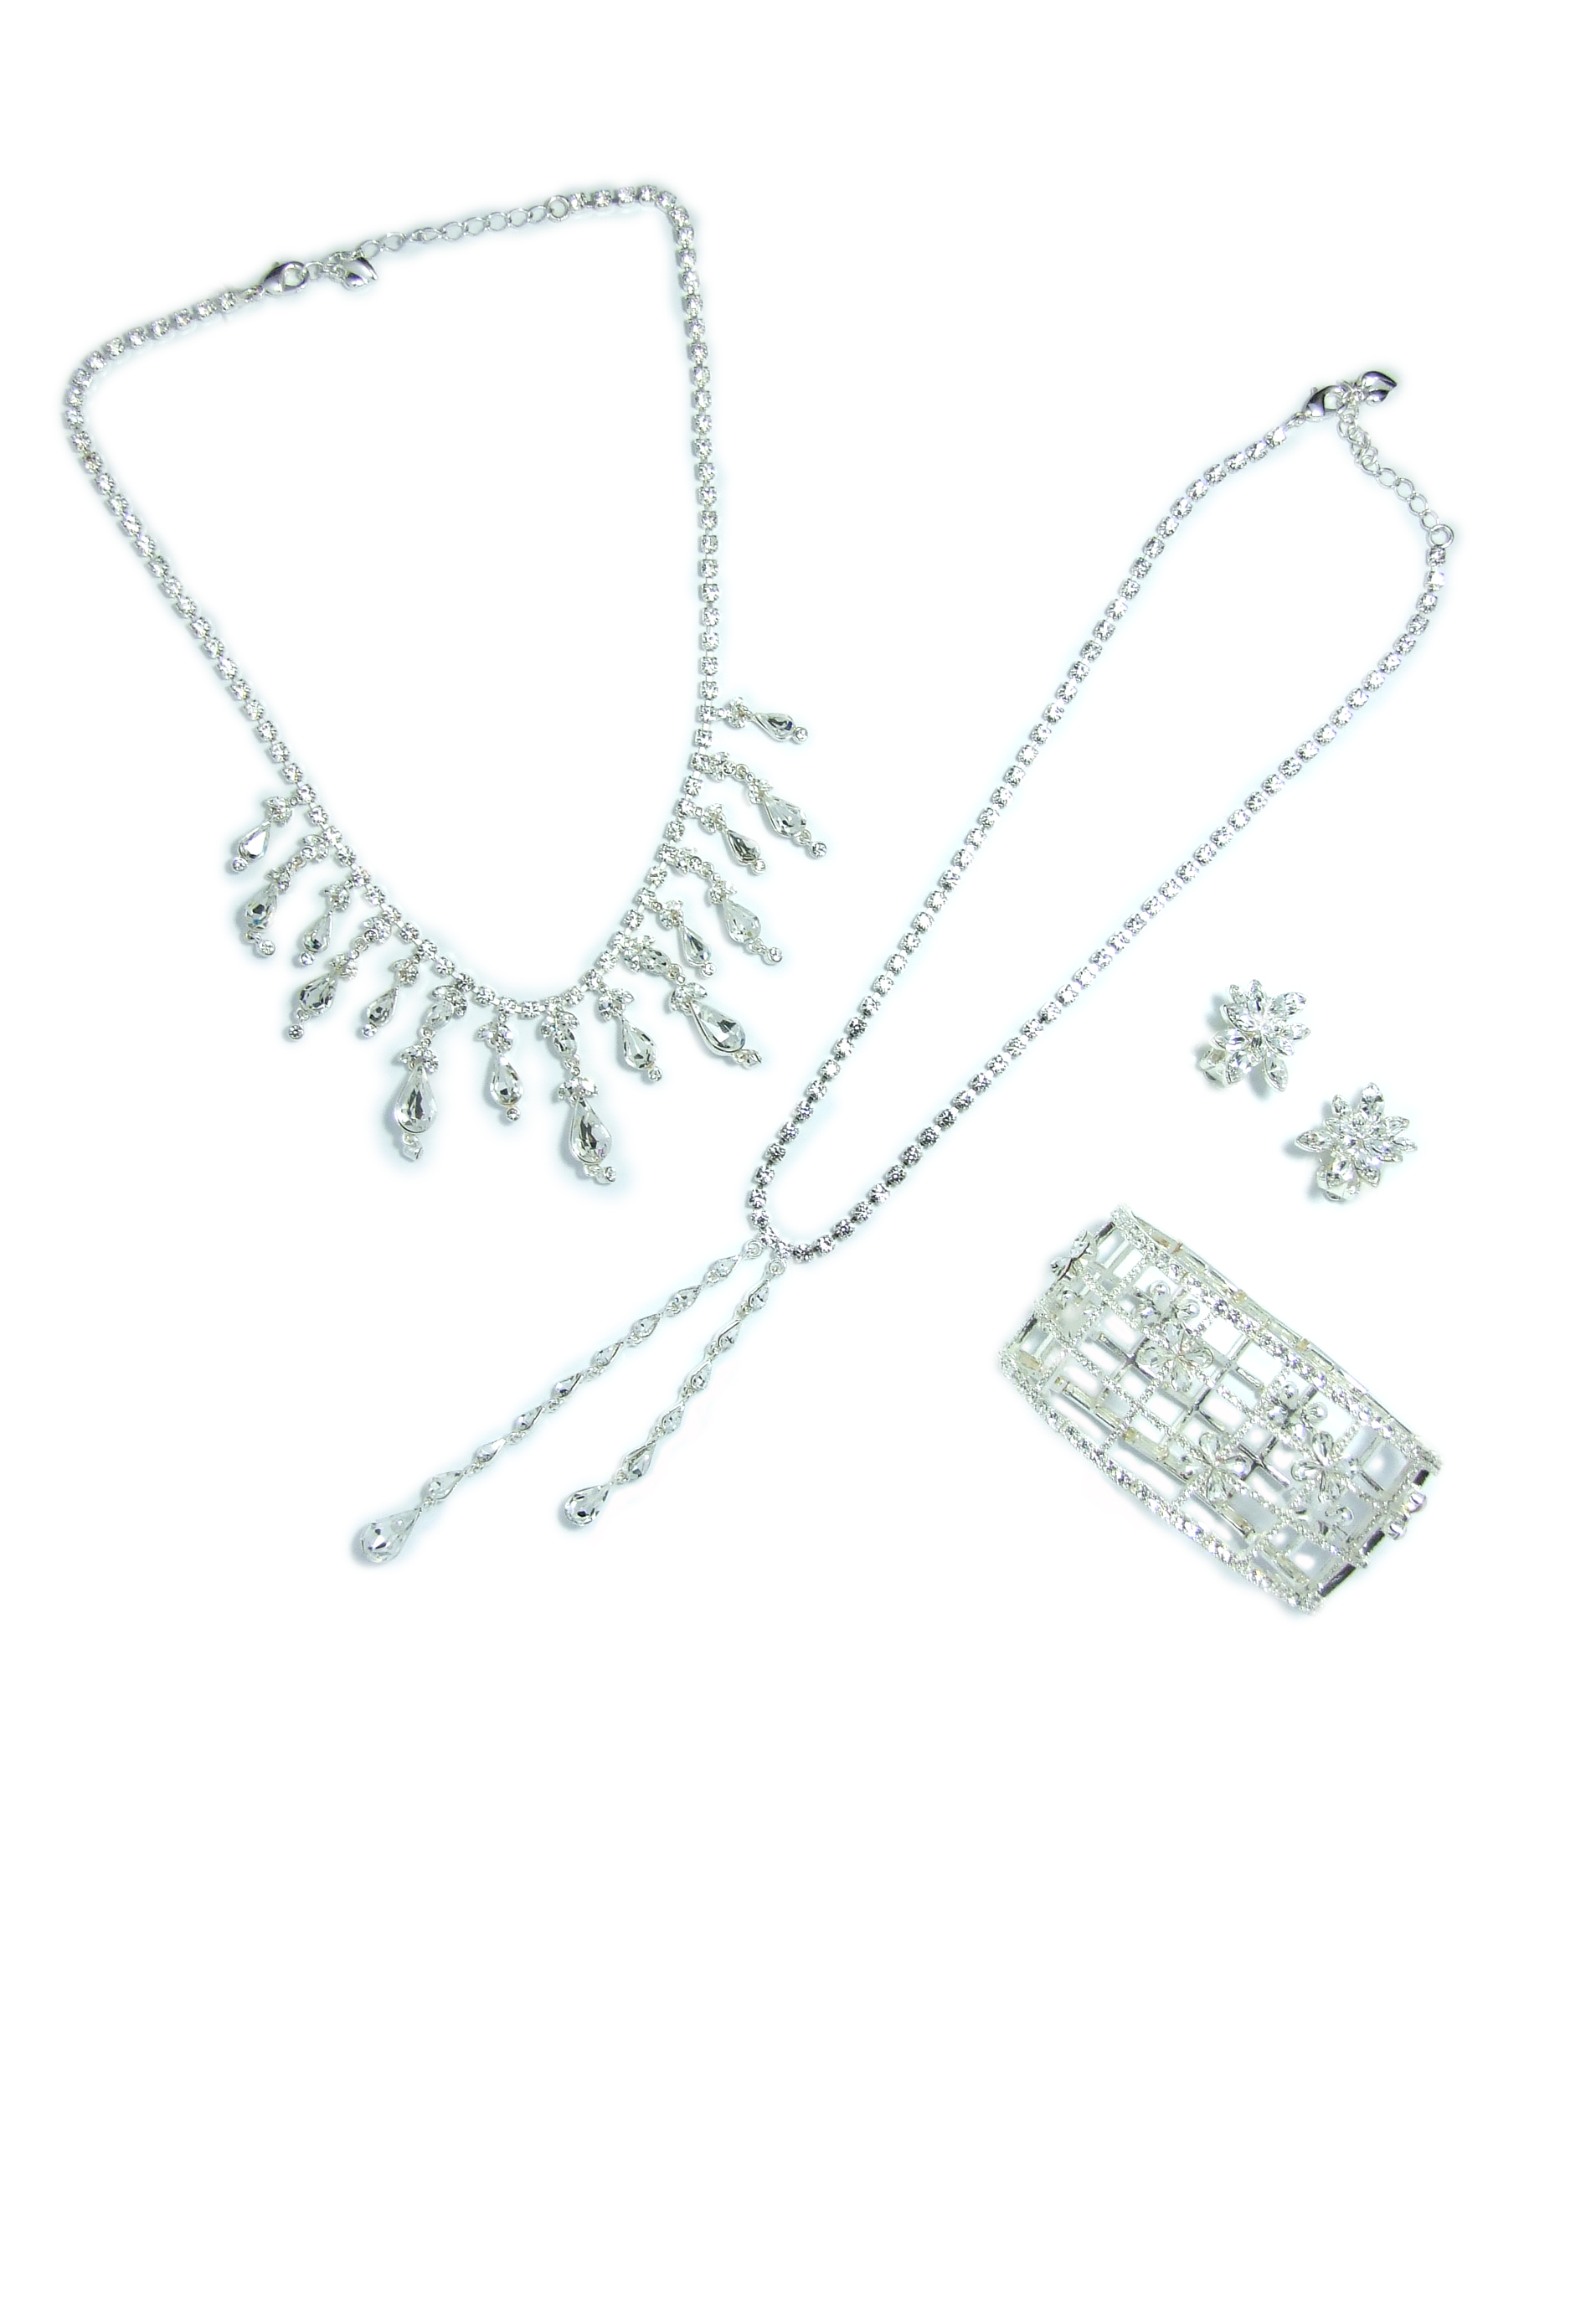 Rhinestone chain necklace, bracelet & earrings